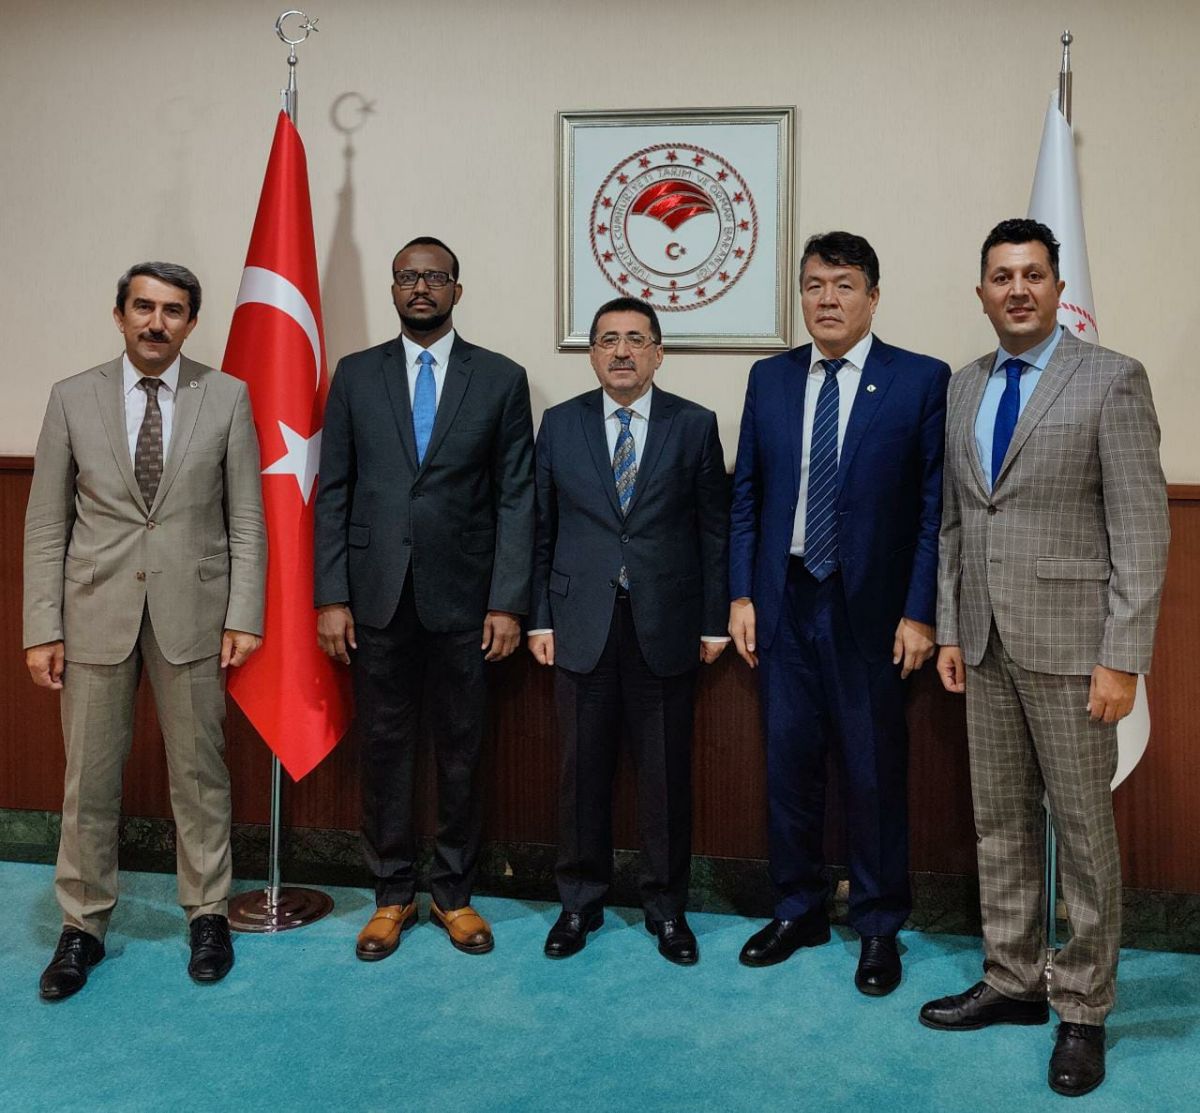 MEETINGS OF IOFS DIRECTOR GENERAL IN TURKIYE, ANKARA 